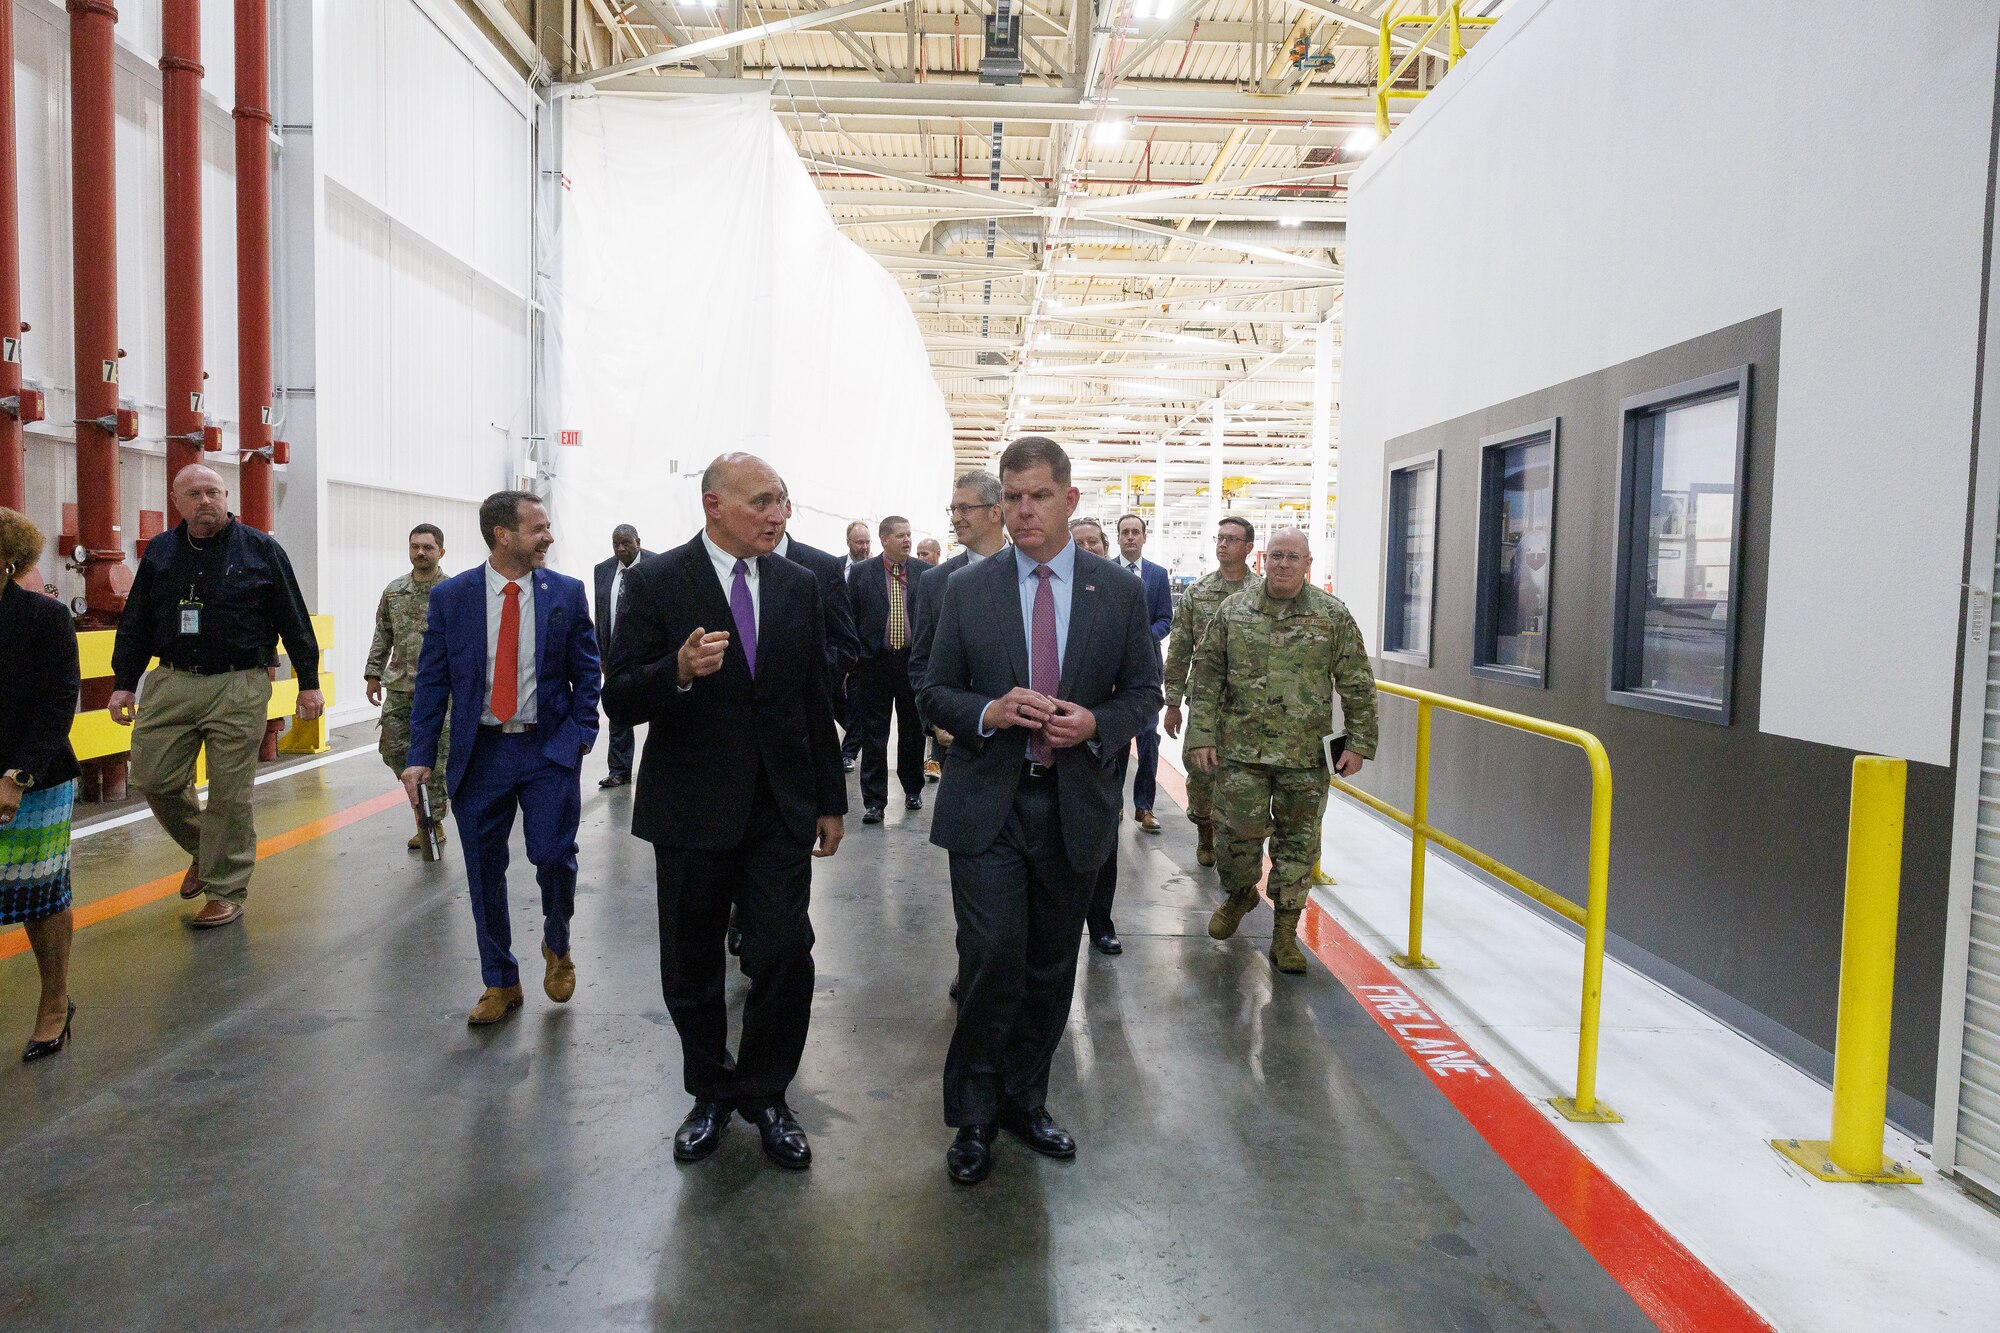 U.S. Secretary of Labor visits AFSC